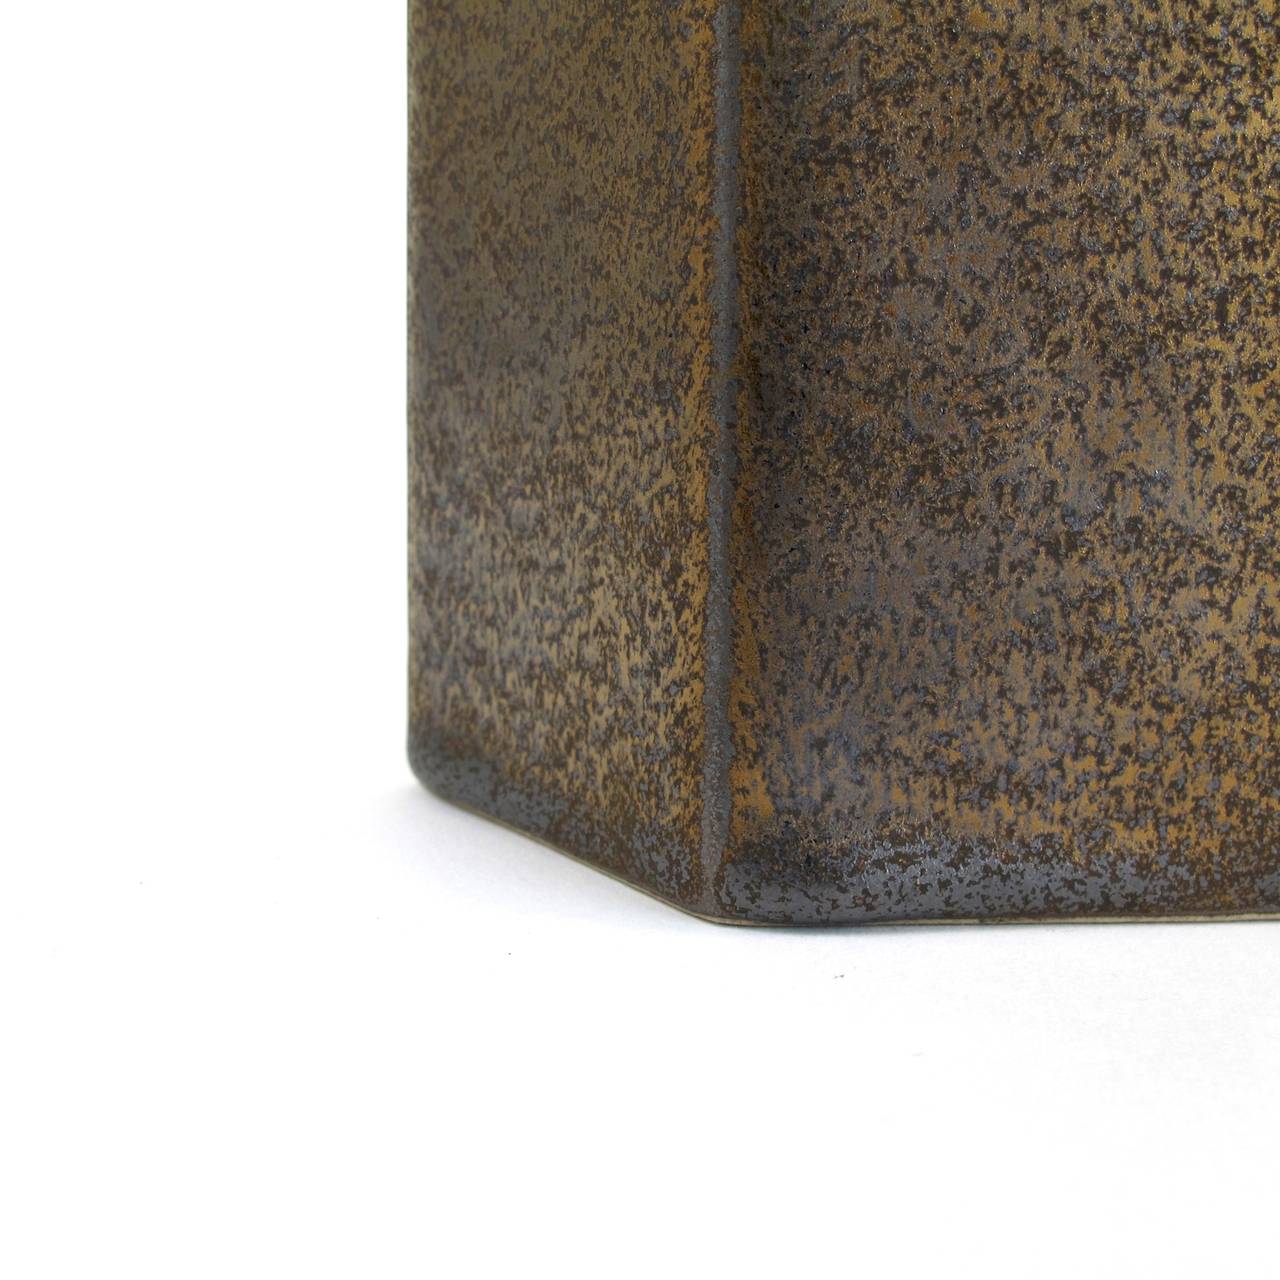 Jan van der Vaart, Bronze Stoneware Vase, Multiple, Executed in Own Studio, 1997 1